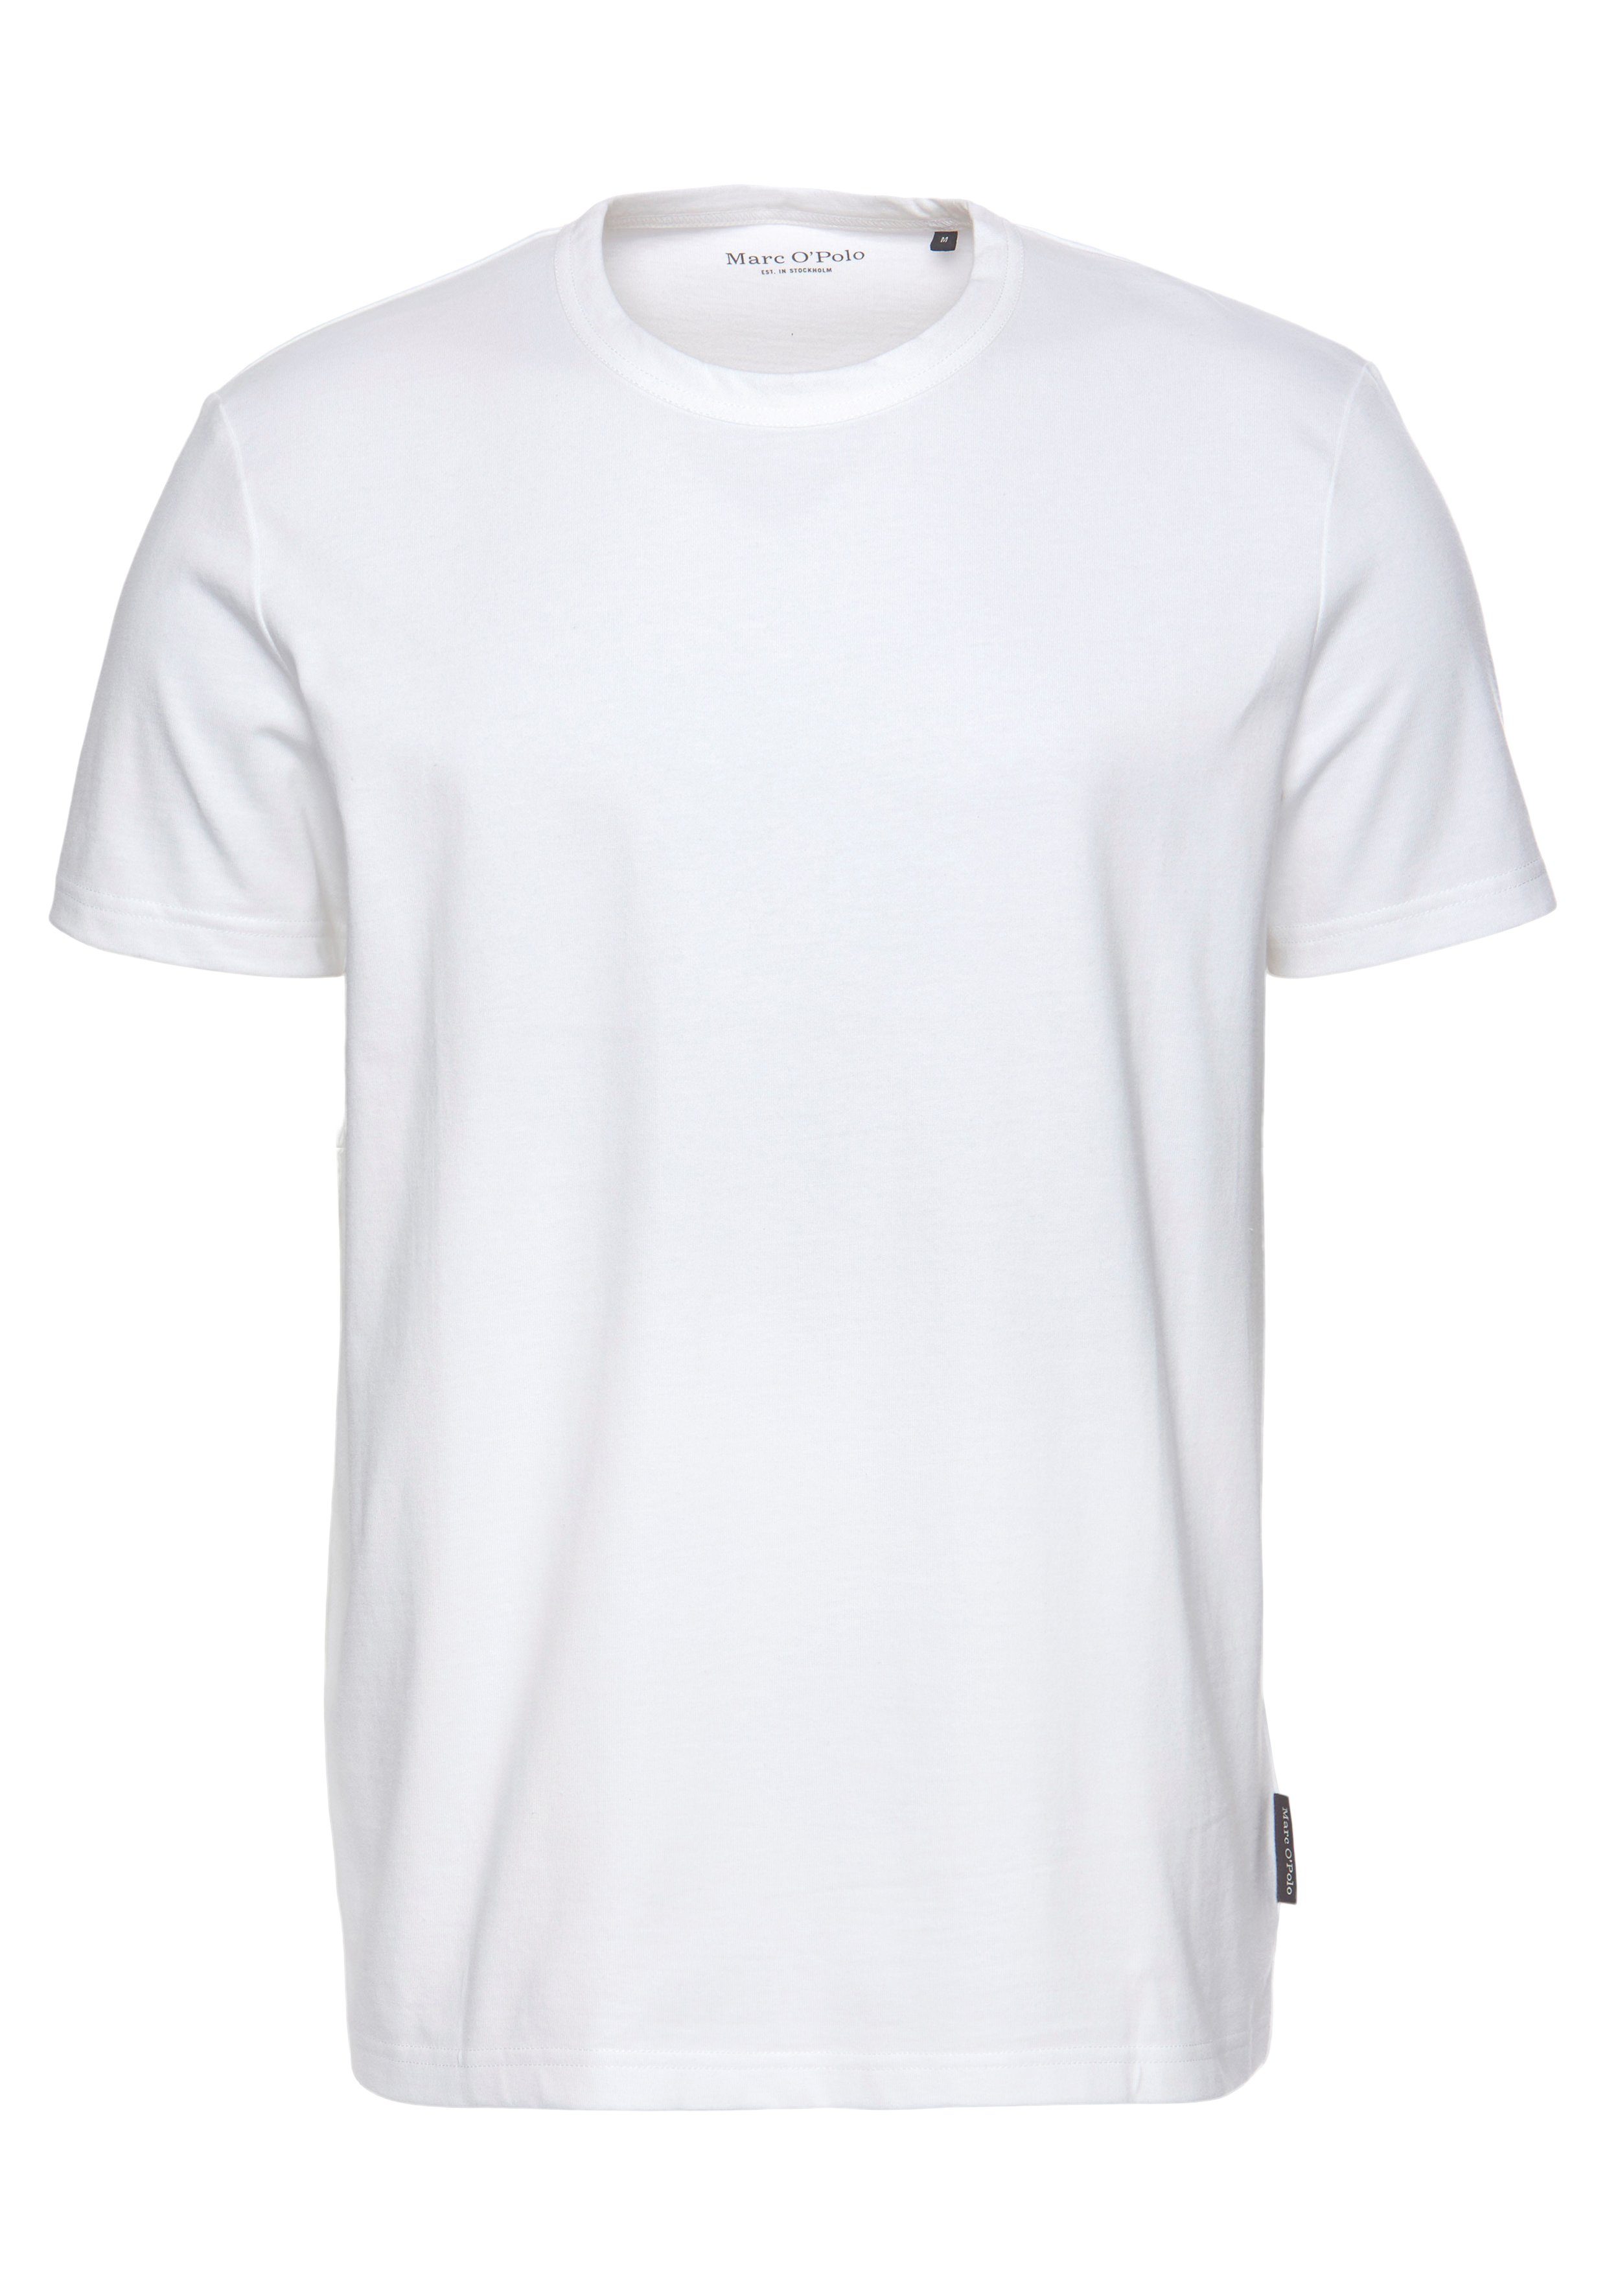 Marc O'Polo T-Shirt Regular white aus Baumwolle Rundhals-T-Shirt hochwertiger